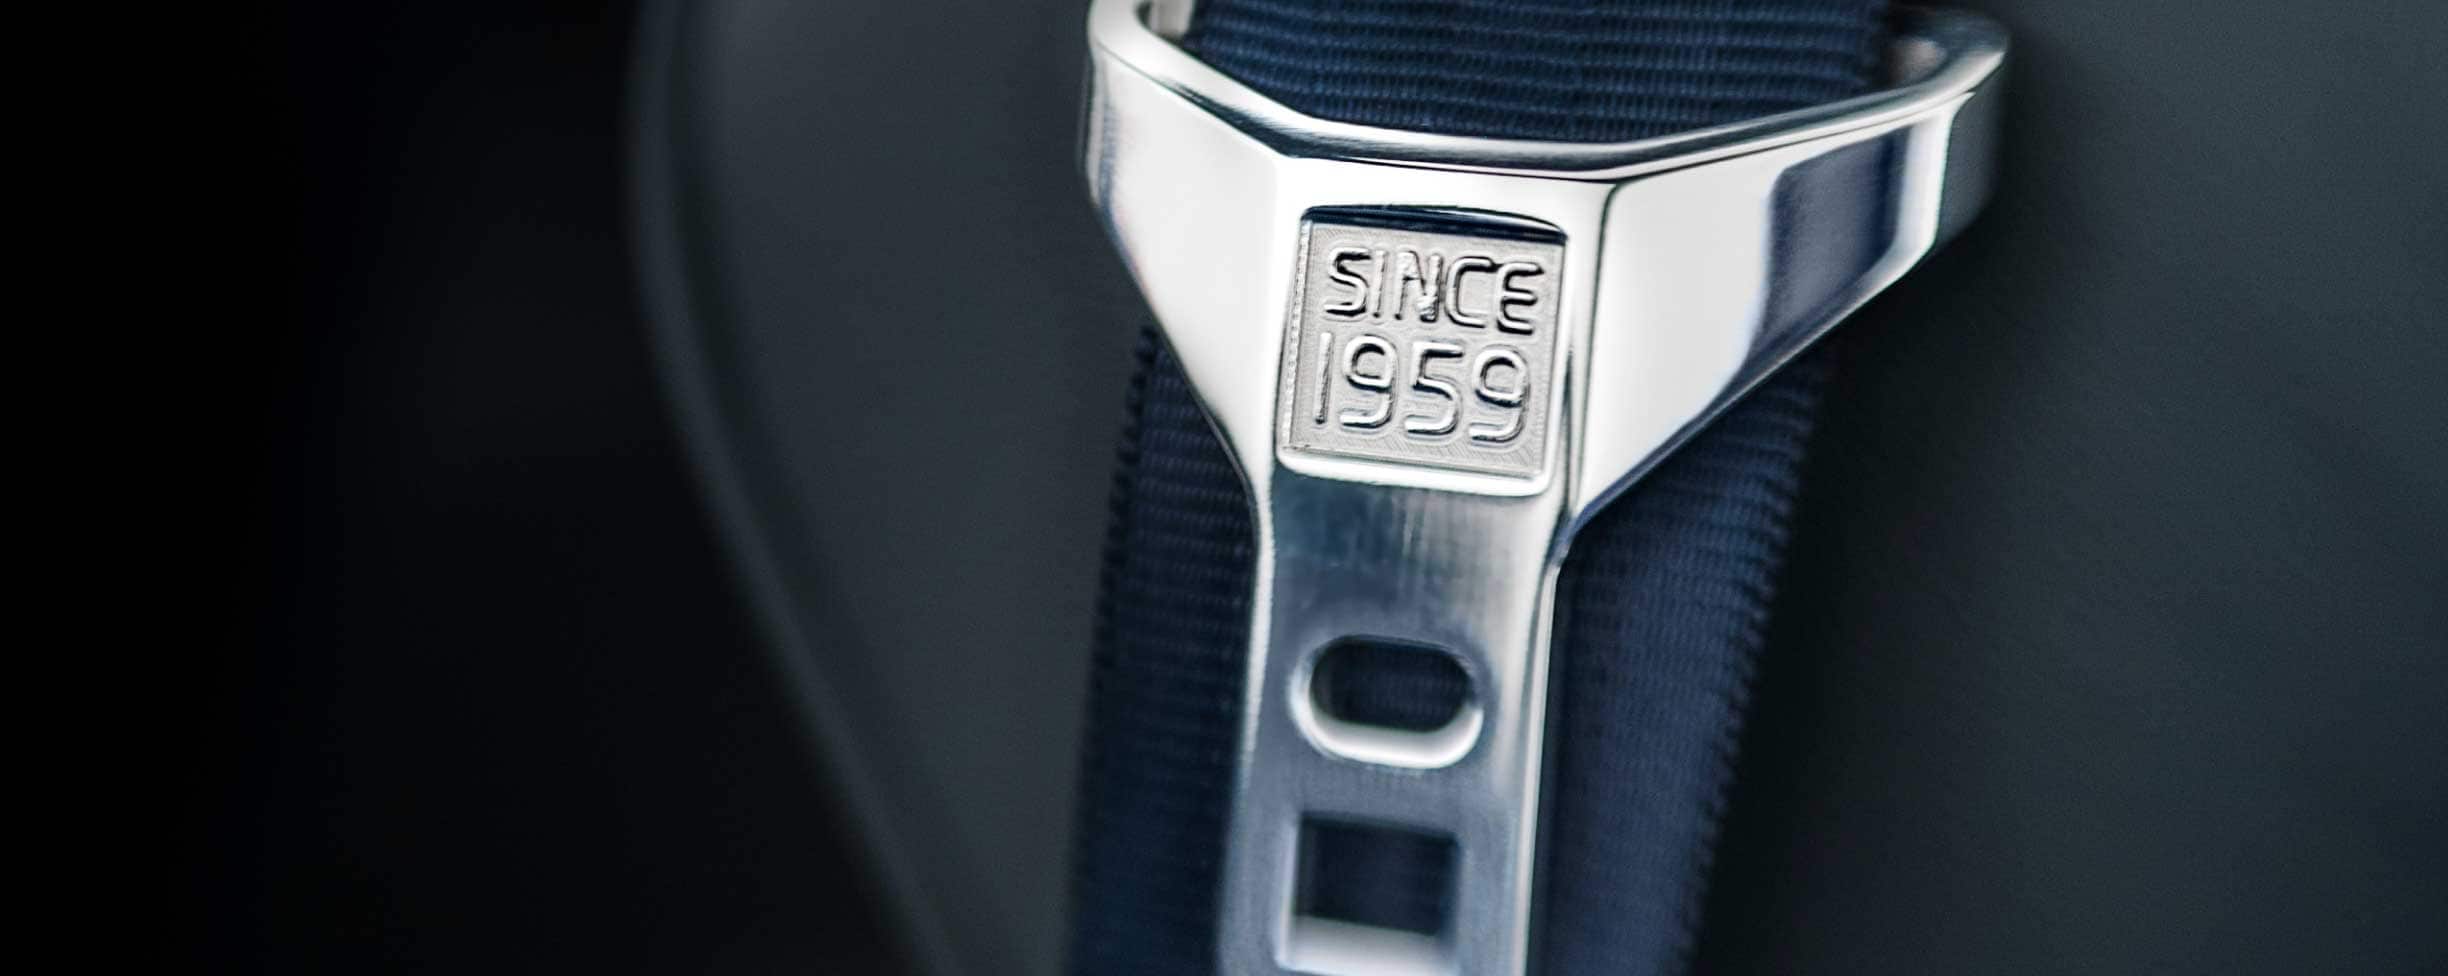 Un cinturón de seguridad en gris con la leyenda "Desde 1959" grabada en la hebilla.